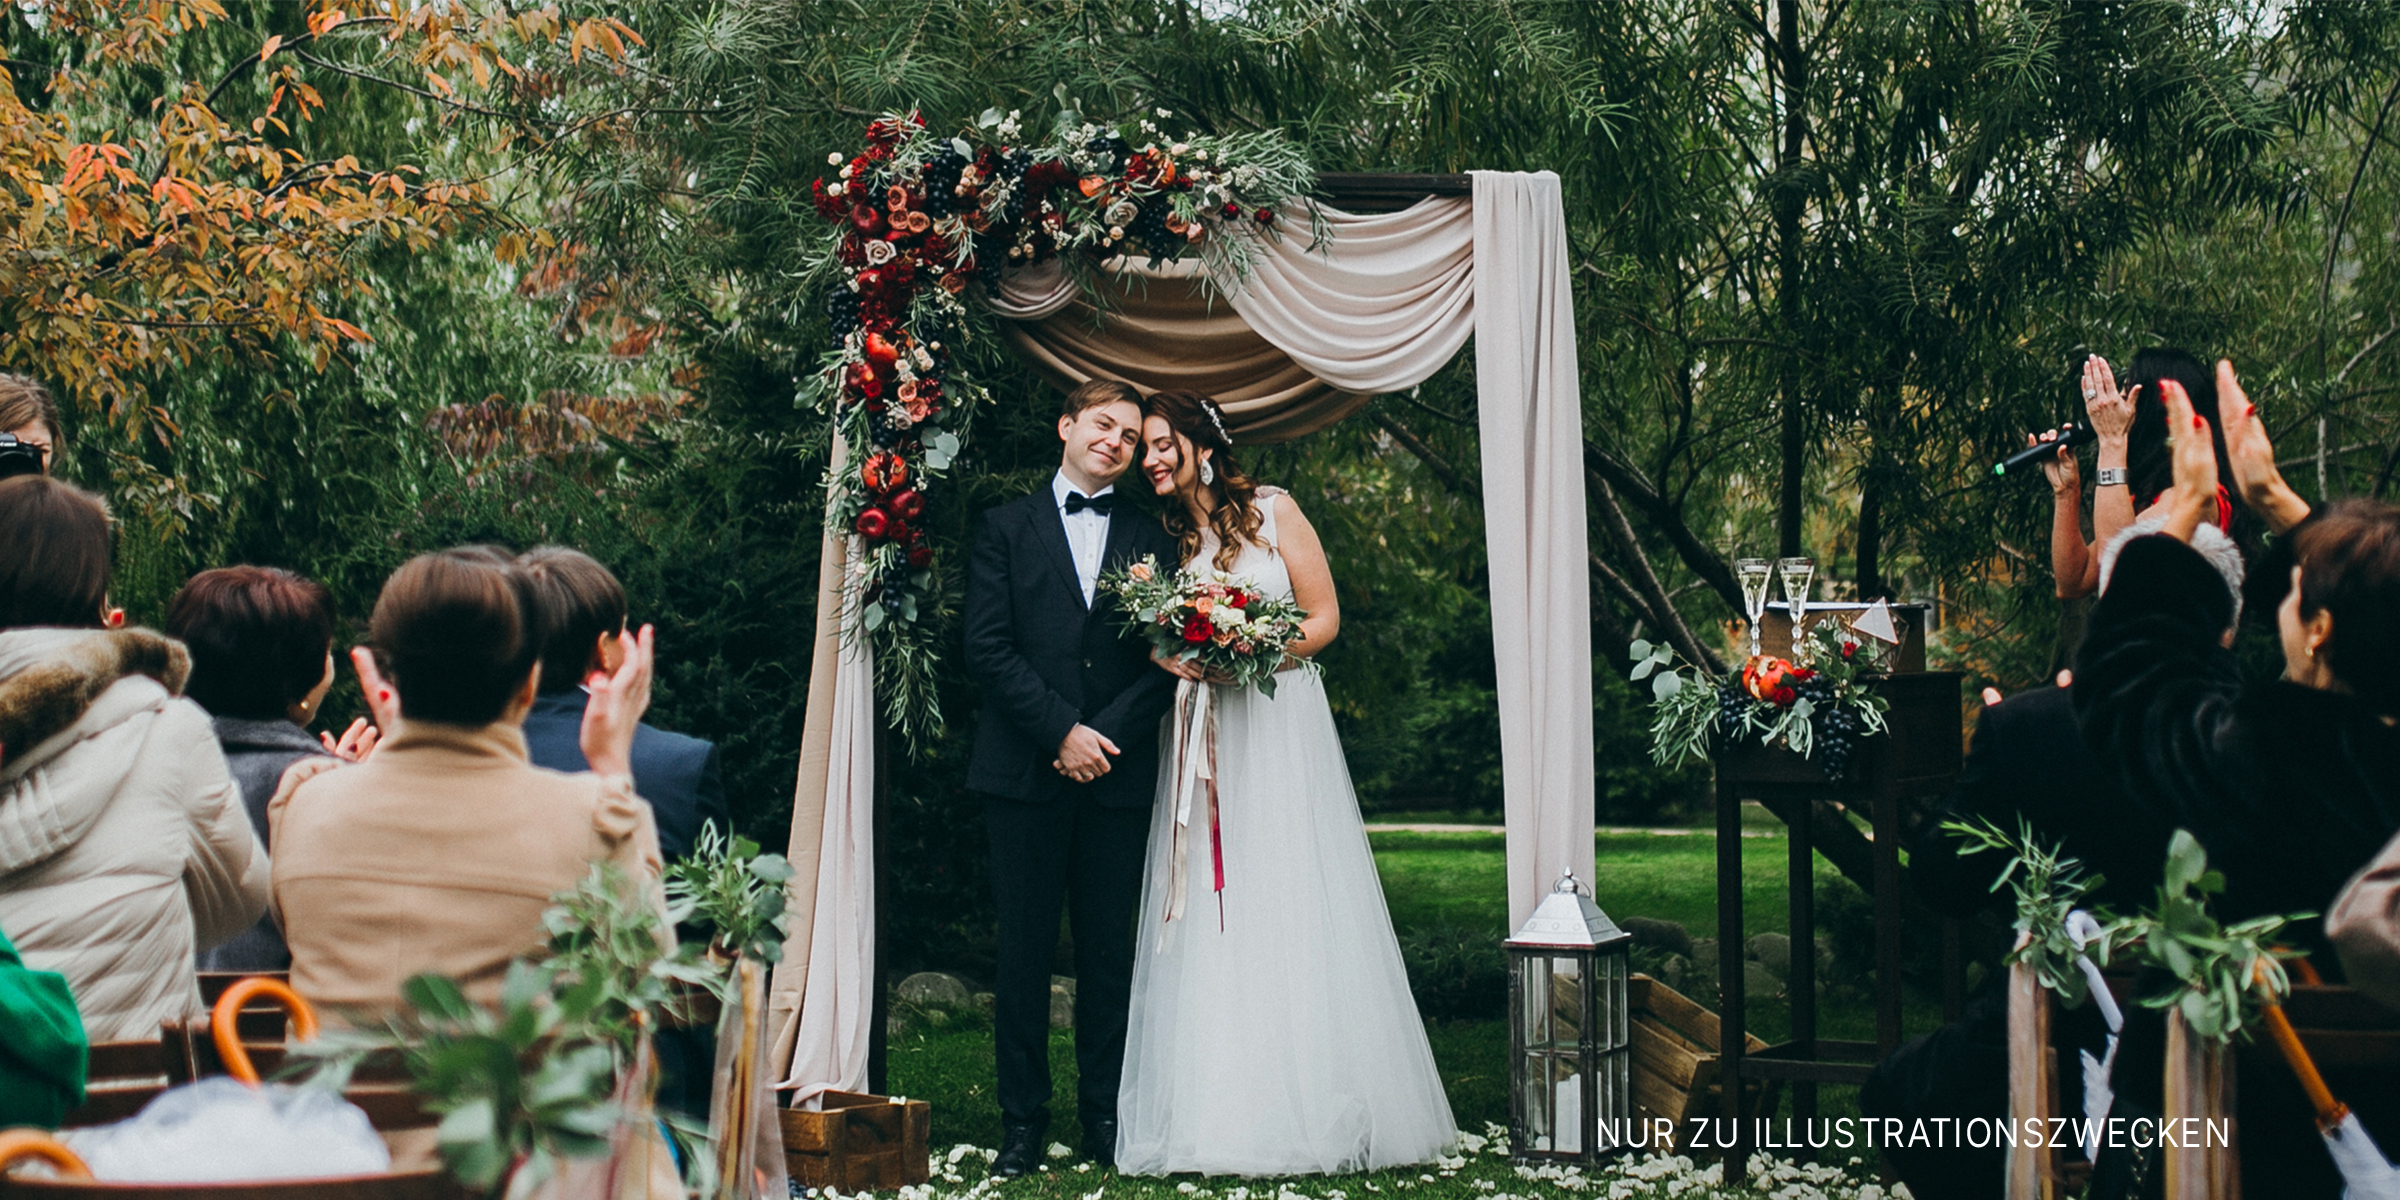 Eine Braut und ein Bräutigam | Quelle: Shutterstock